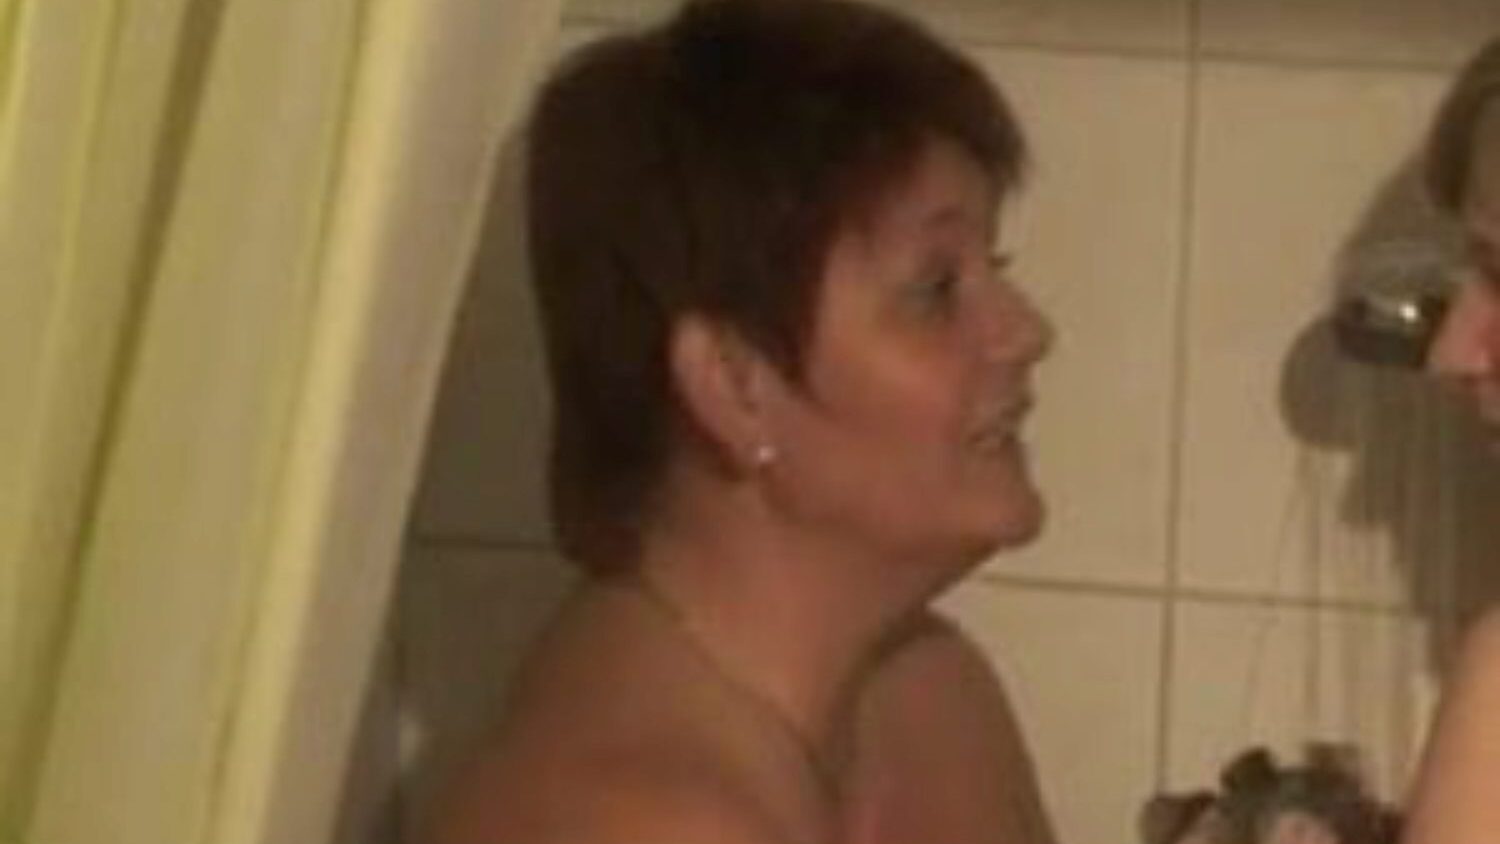 zwei bi-girls duschen: kostenloses lesbisches porno video 76 - xhamster schau dir 2 bi-girls duschen rohr liebevolle film-szene kostenlos für alle auf xhamster an, mit der dominanten sammlung deutscher lesben, mutter, die ich gerne ficken würde & bbw pornografie Filmsequenzen